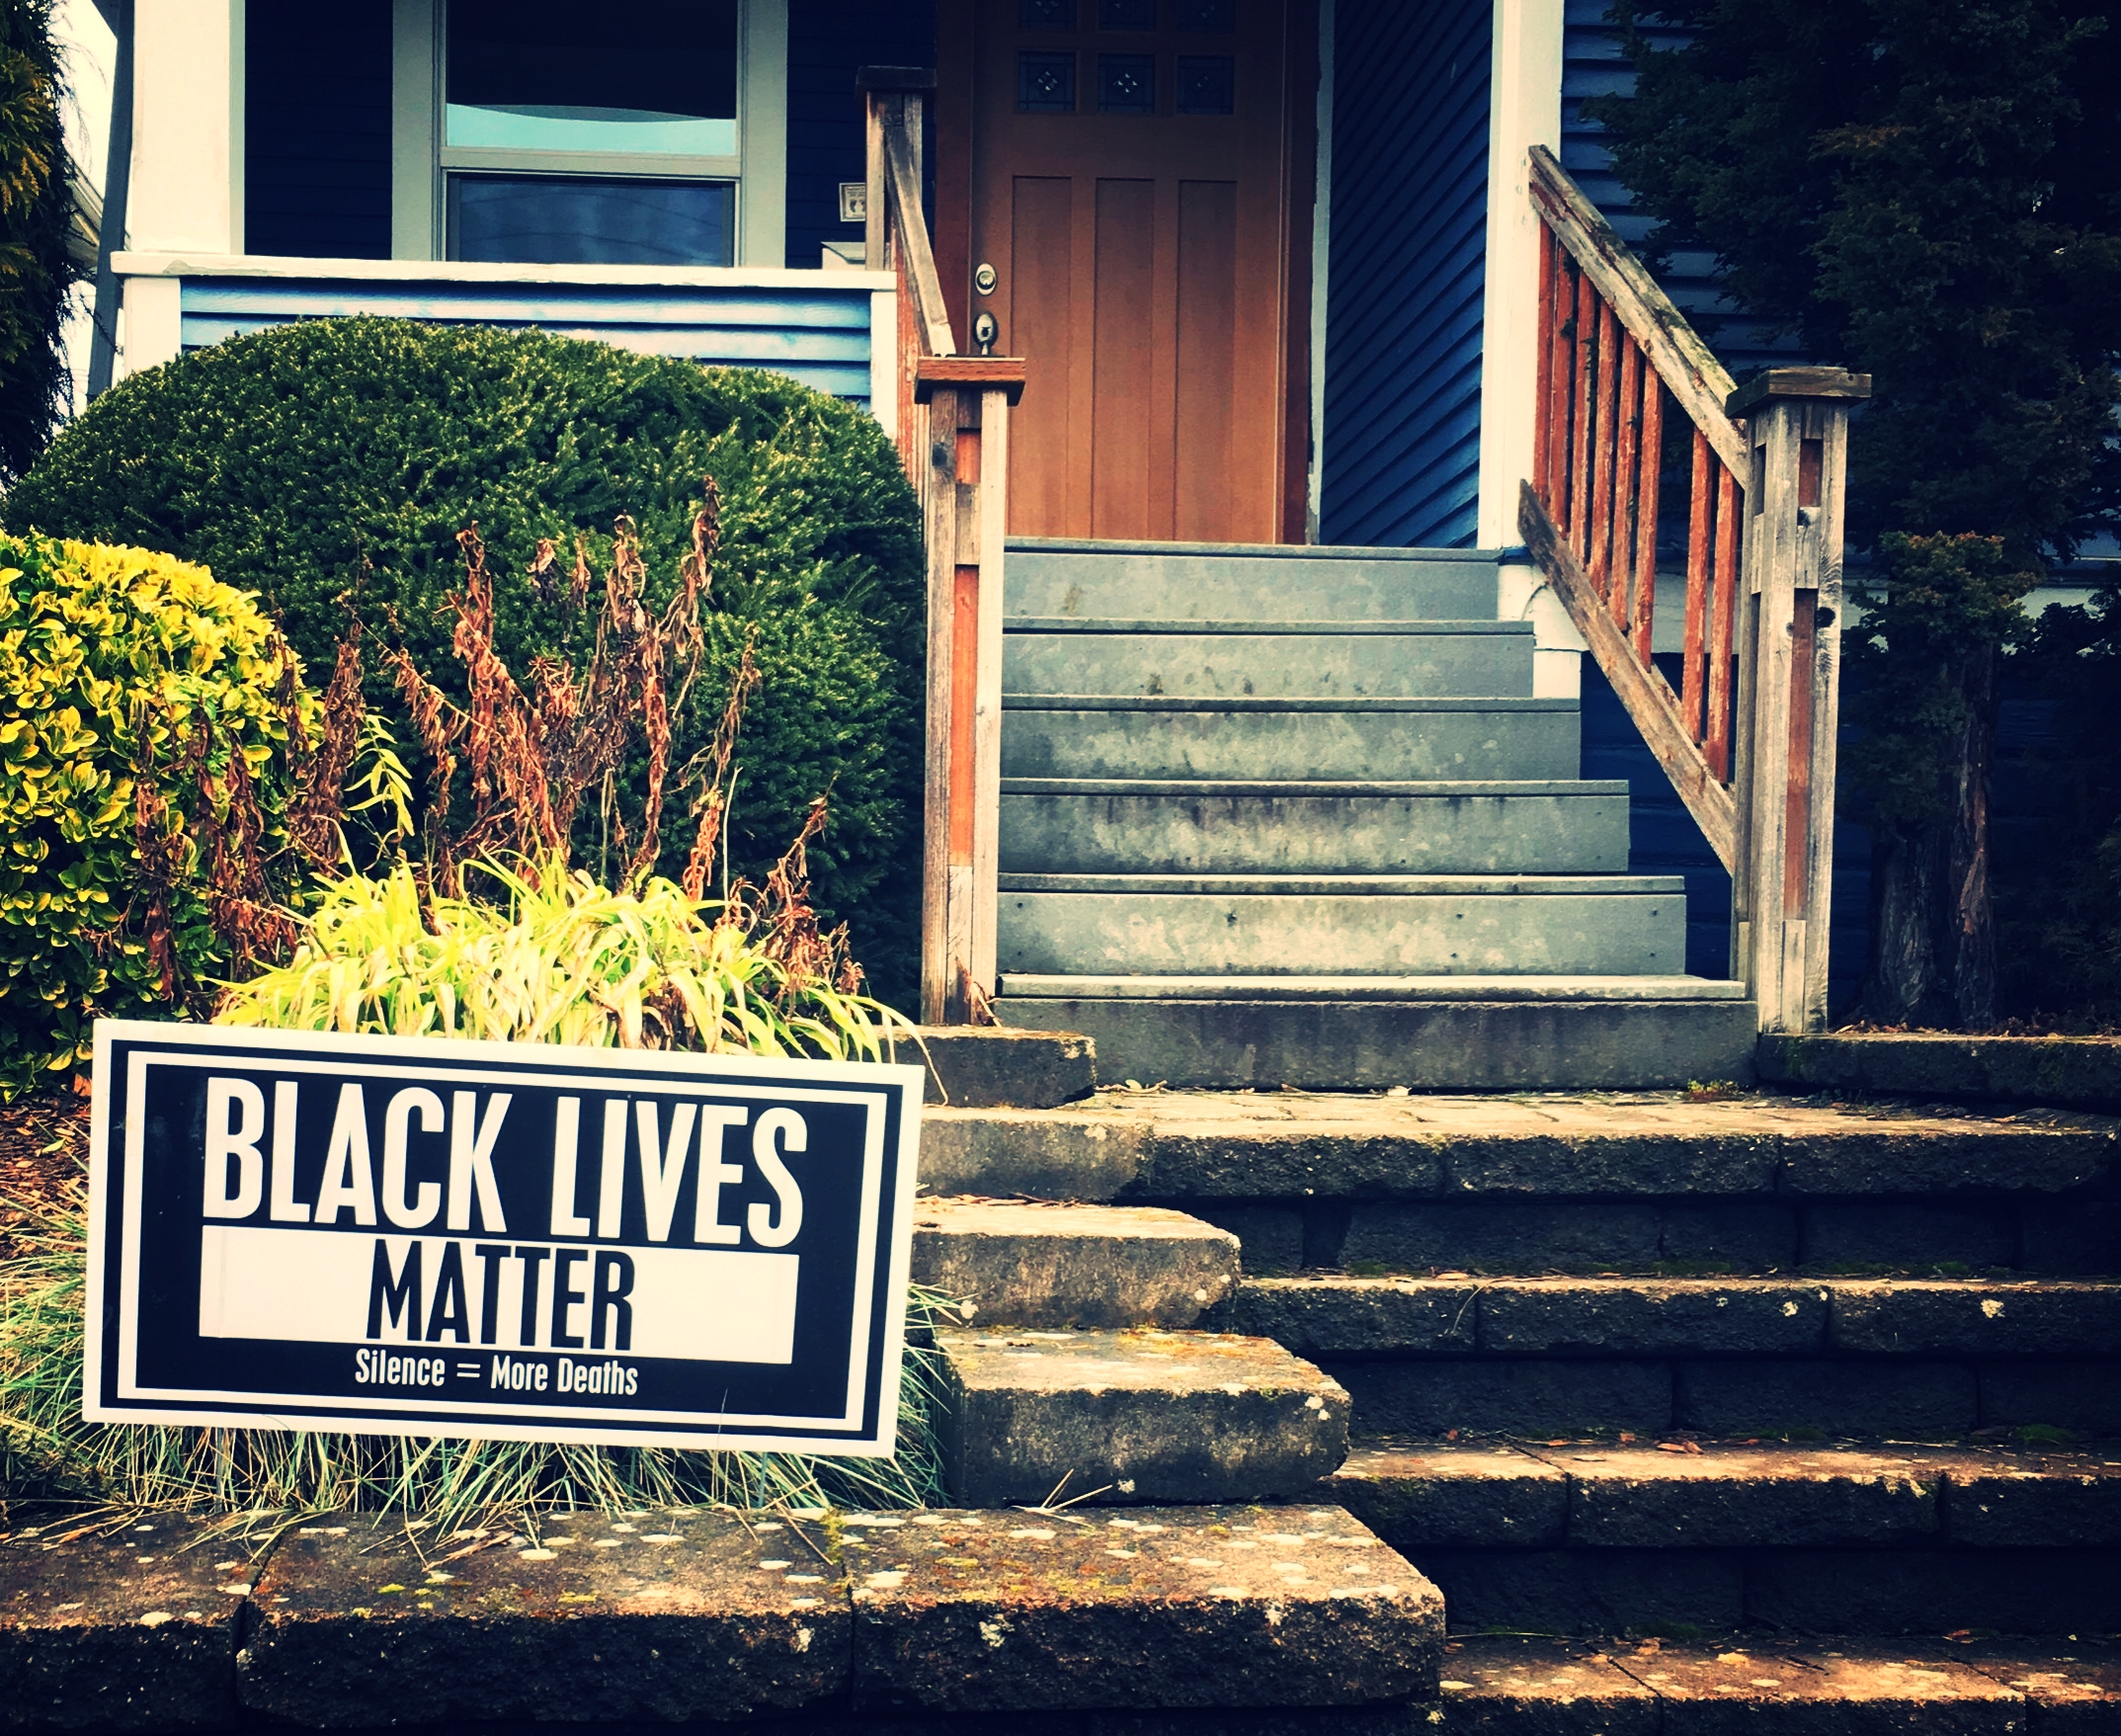  "Black Lives Matter"  "Silence = More Deaths"  #blacklivesmatter  